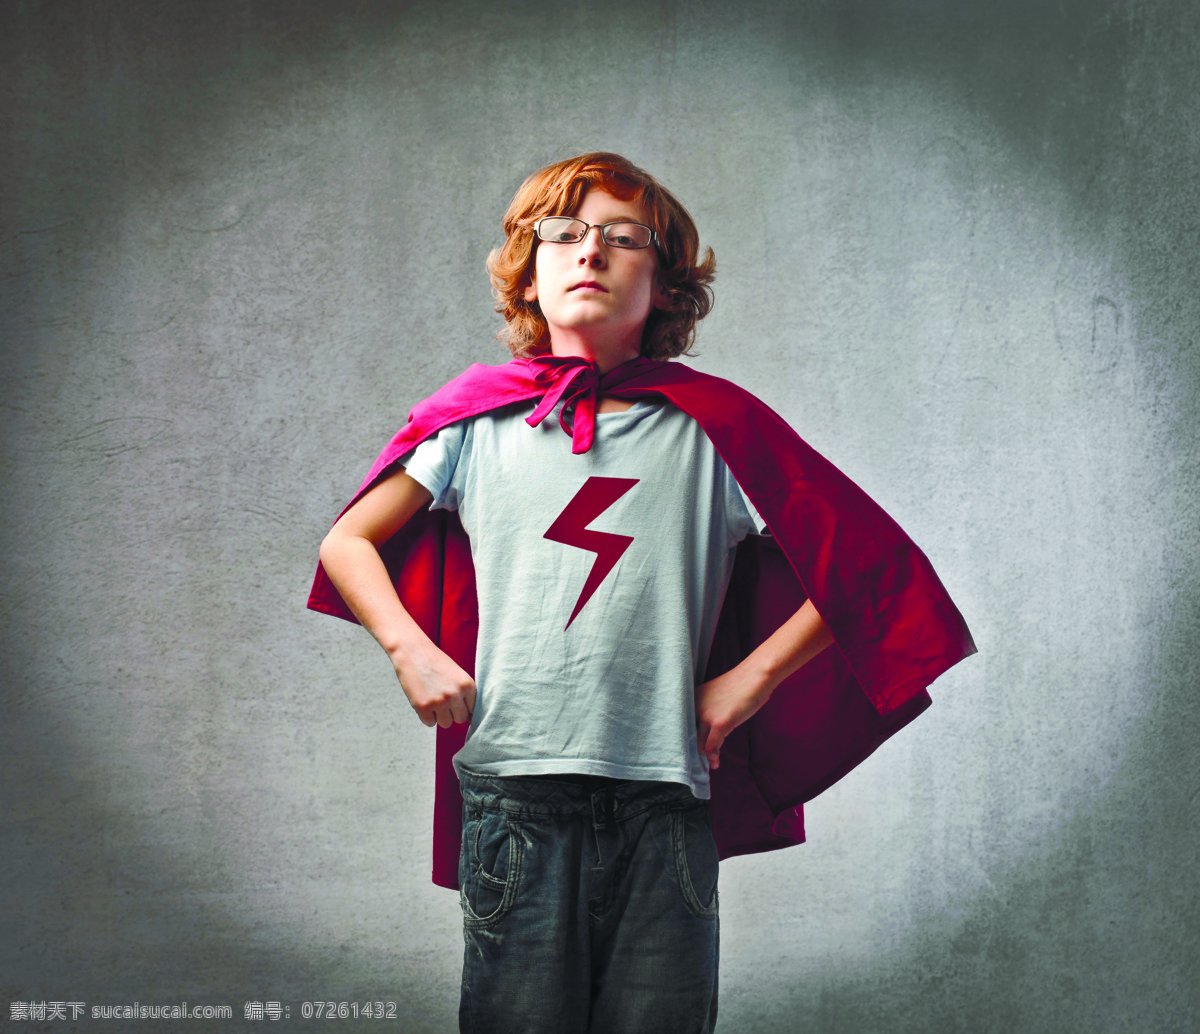 外国 儿童 超人 小男孩 英雄人物 超人儿童 外国儿童 披风 生活人物 人物图片